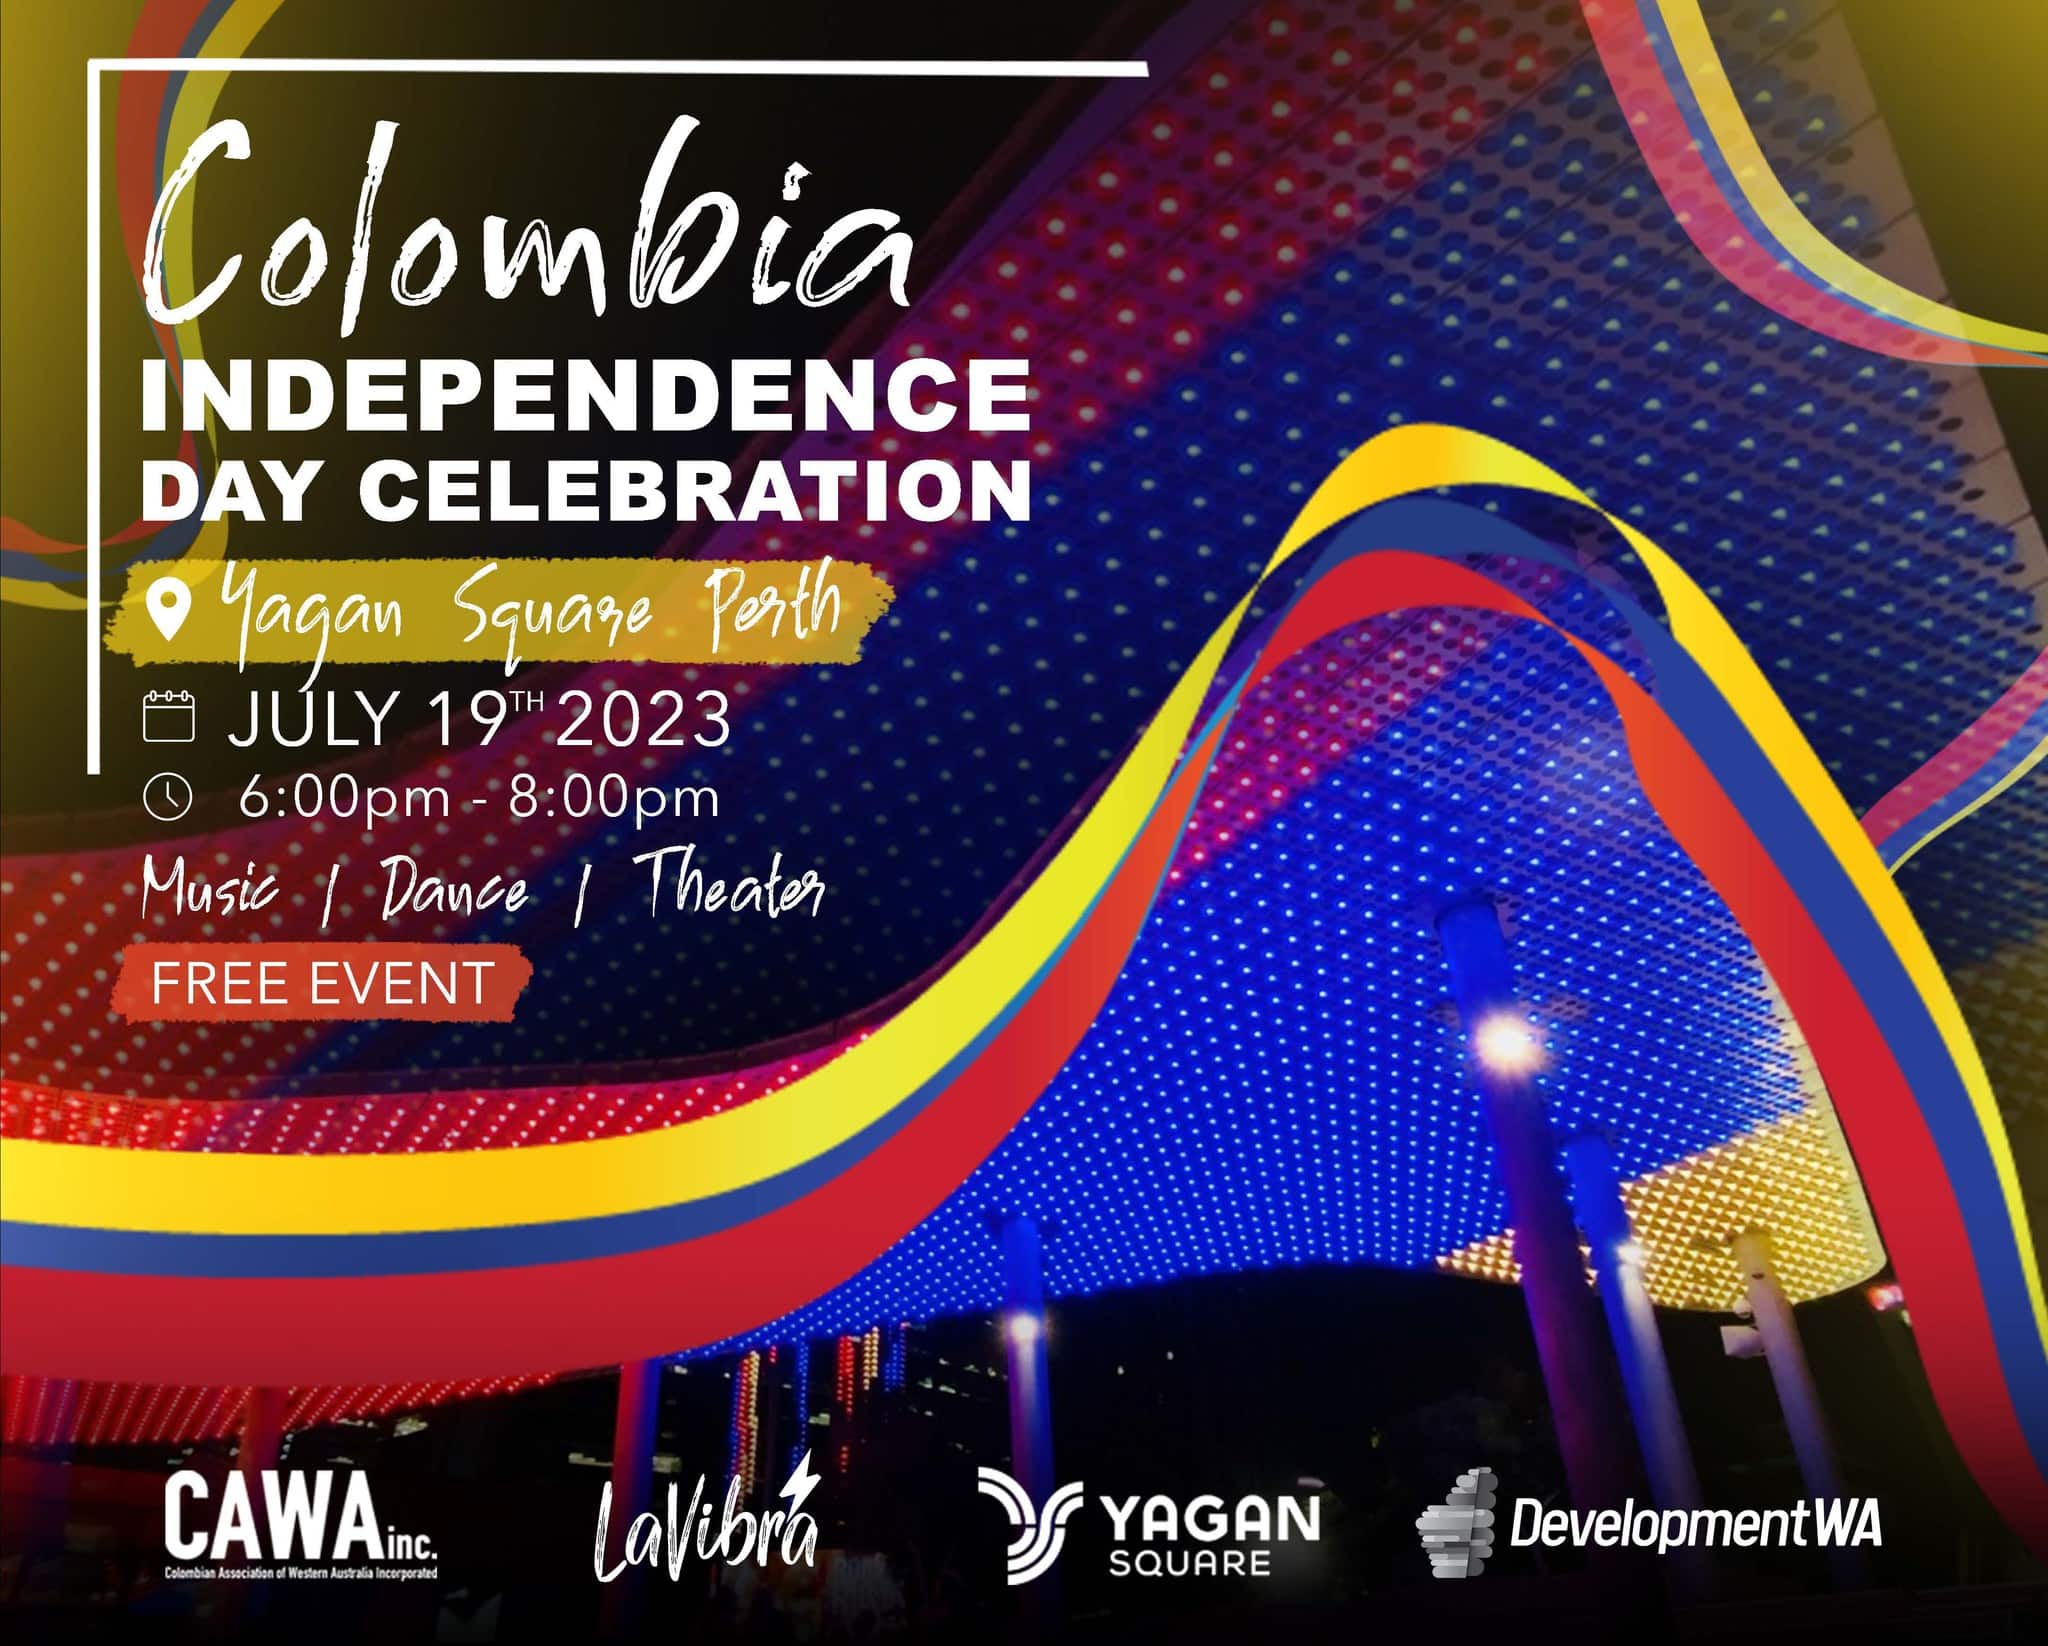 Colombia Independence Day Celebration, July 17, 2023 Buggybuddys